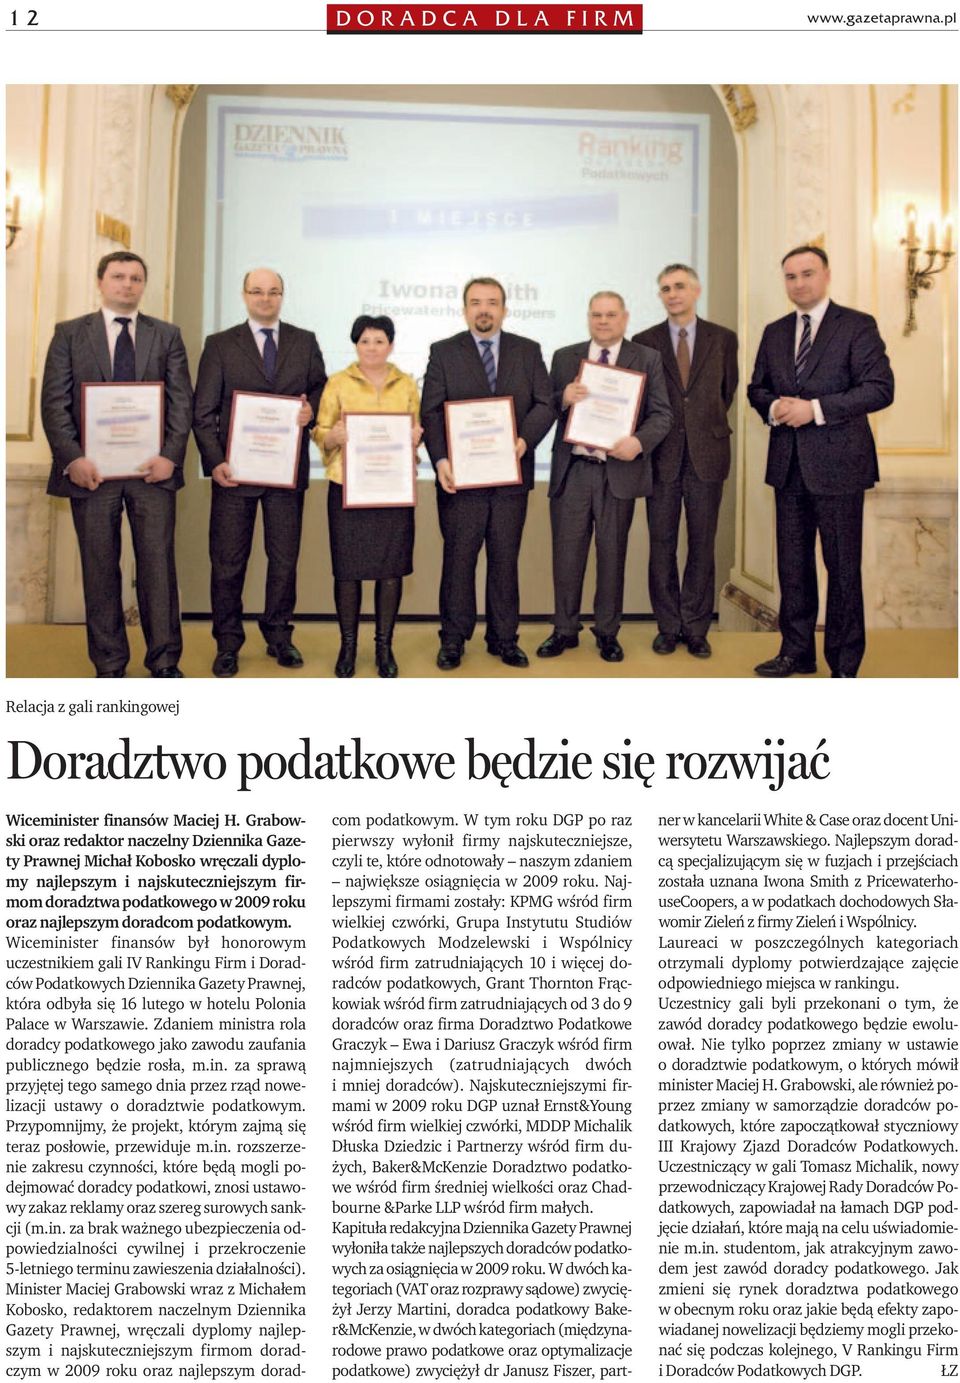 Wiceminister finansów był honorowym uczestnikiem gali IV Rankingu Firm i Doradców Podatkowych Dziennika Gazety Prawnej, która odbyła się 16 lutego w hotelu Polonia Palace w Warszawie.